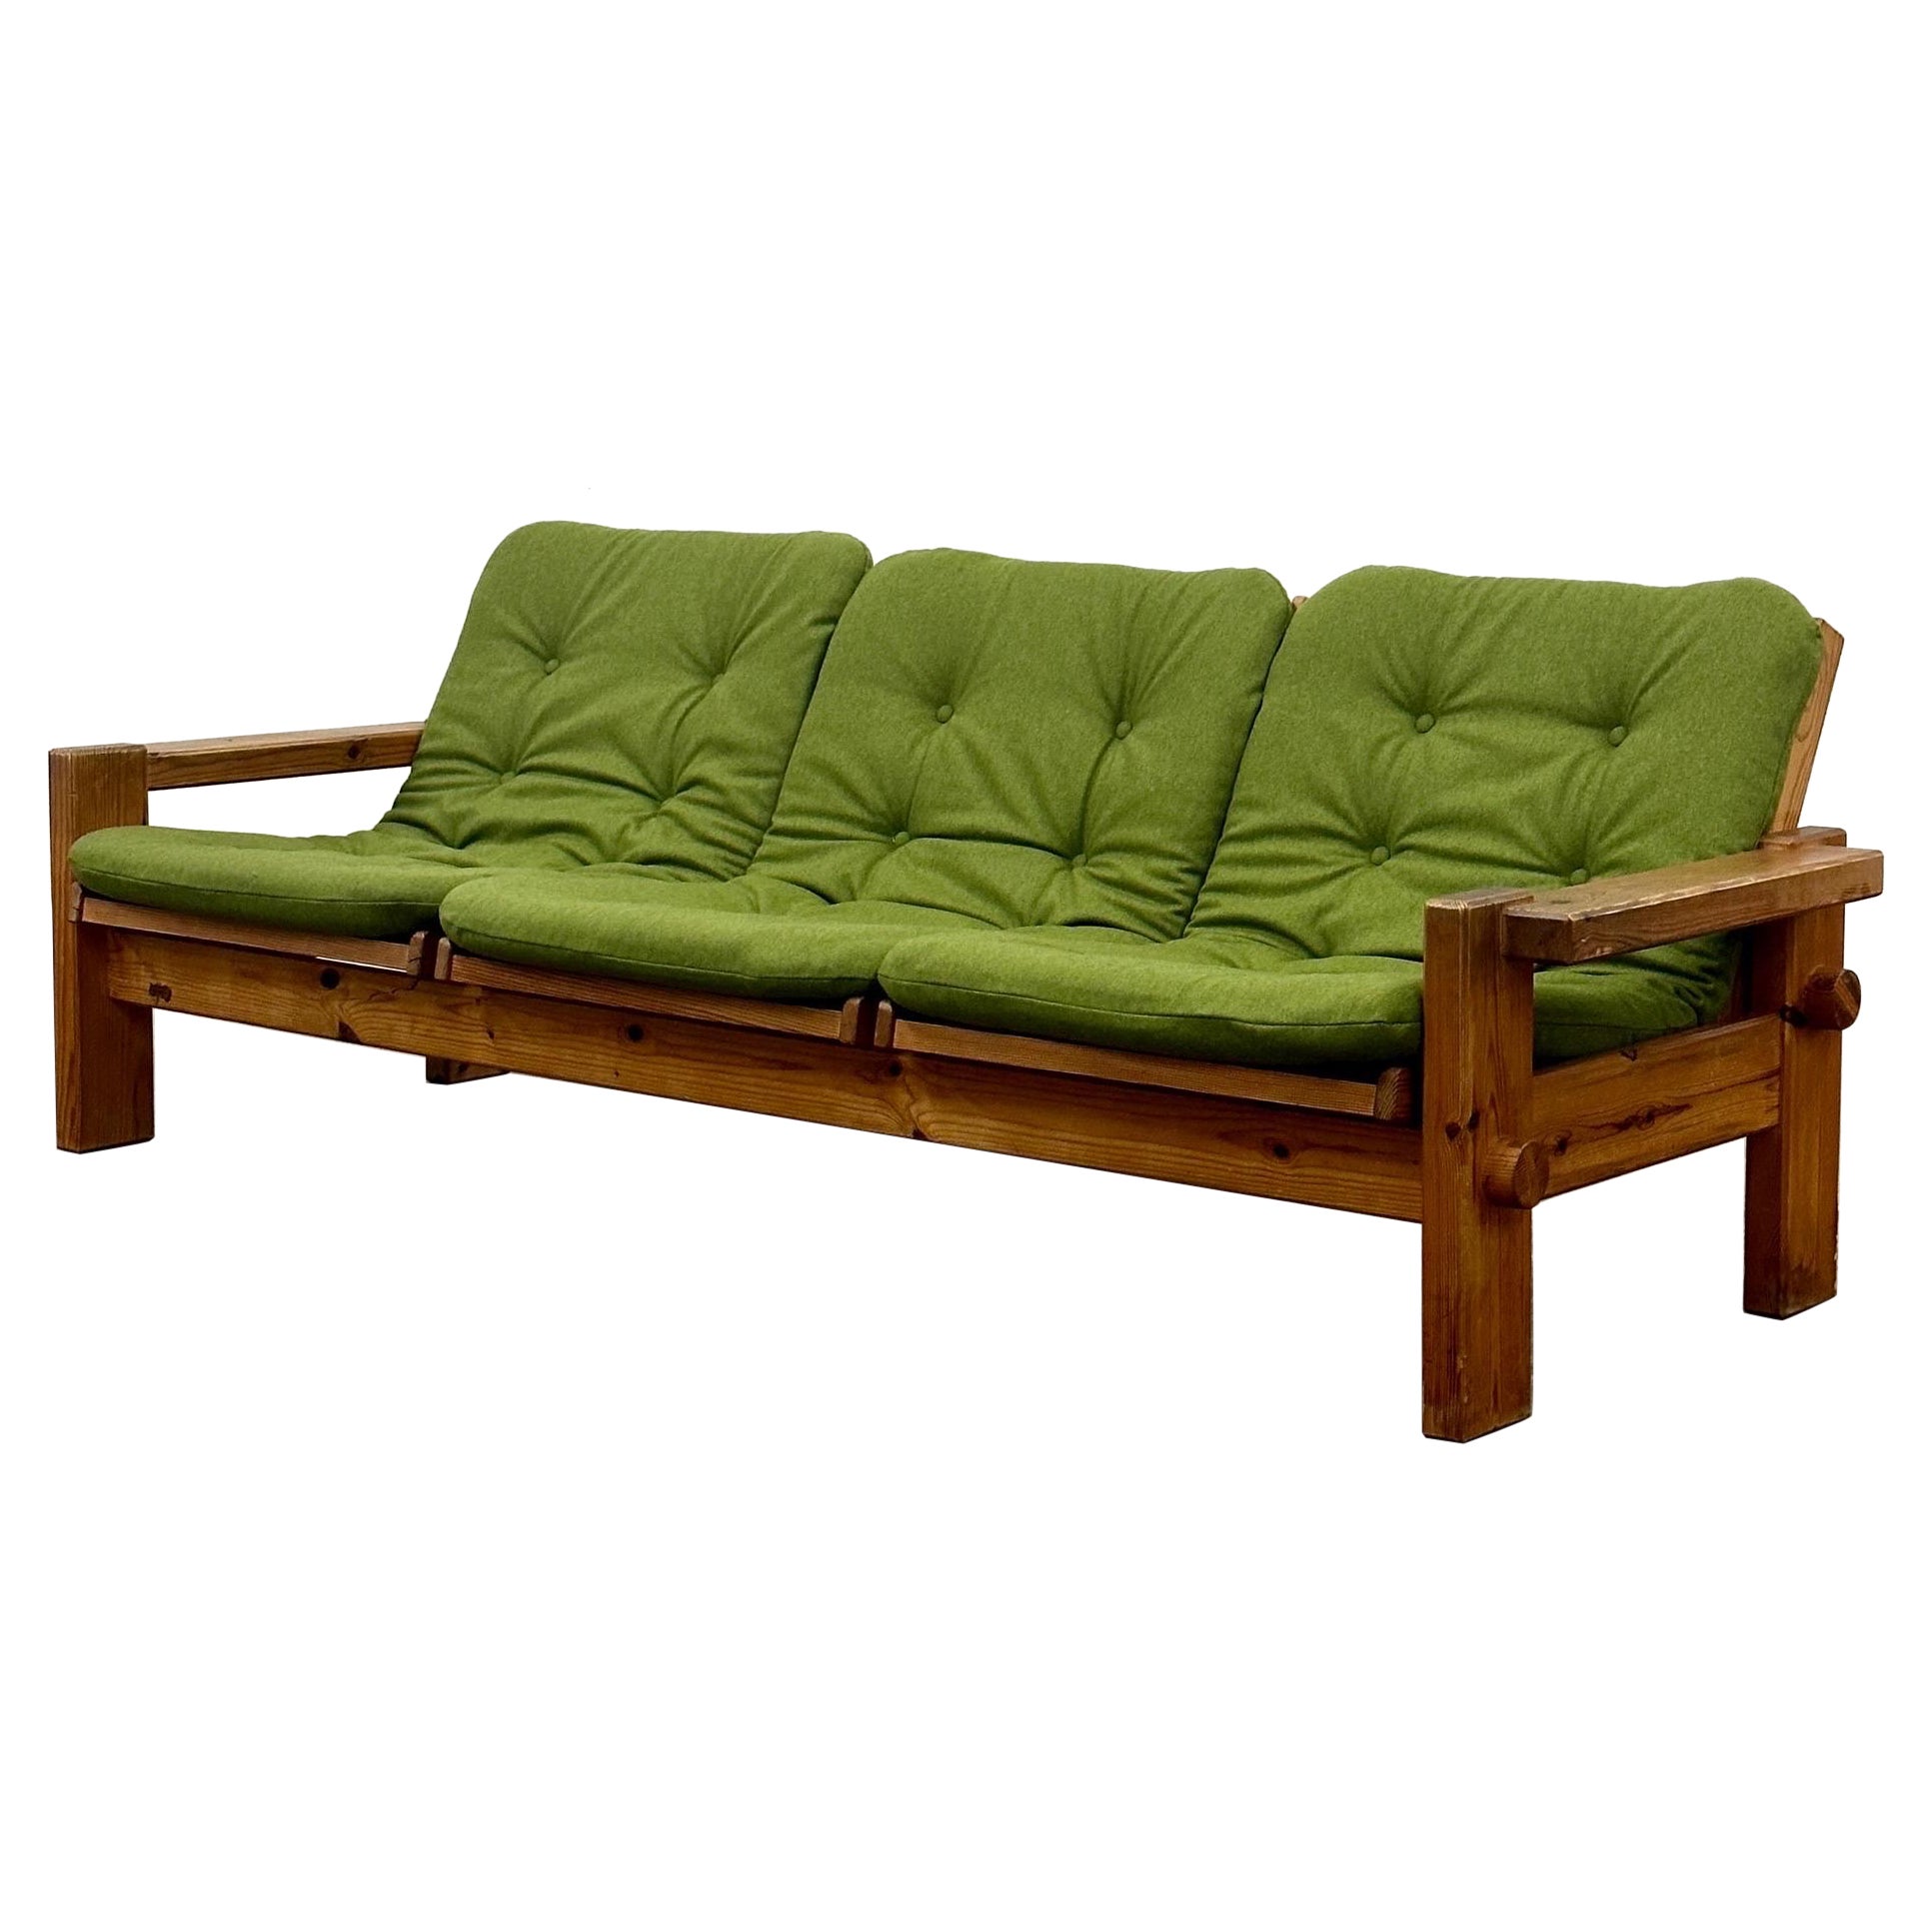 frame 104 wood - pine sofa Pine wood 1stDibs set, pine at sofa Sale For Sofas | wood design, sofa pine